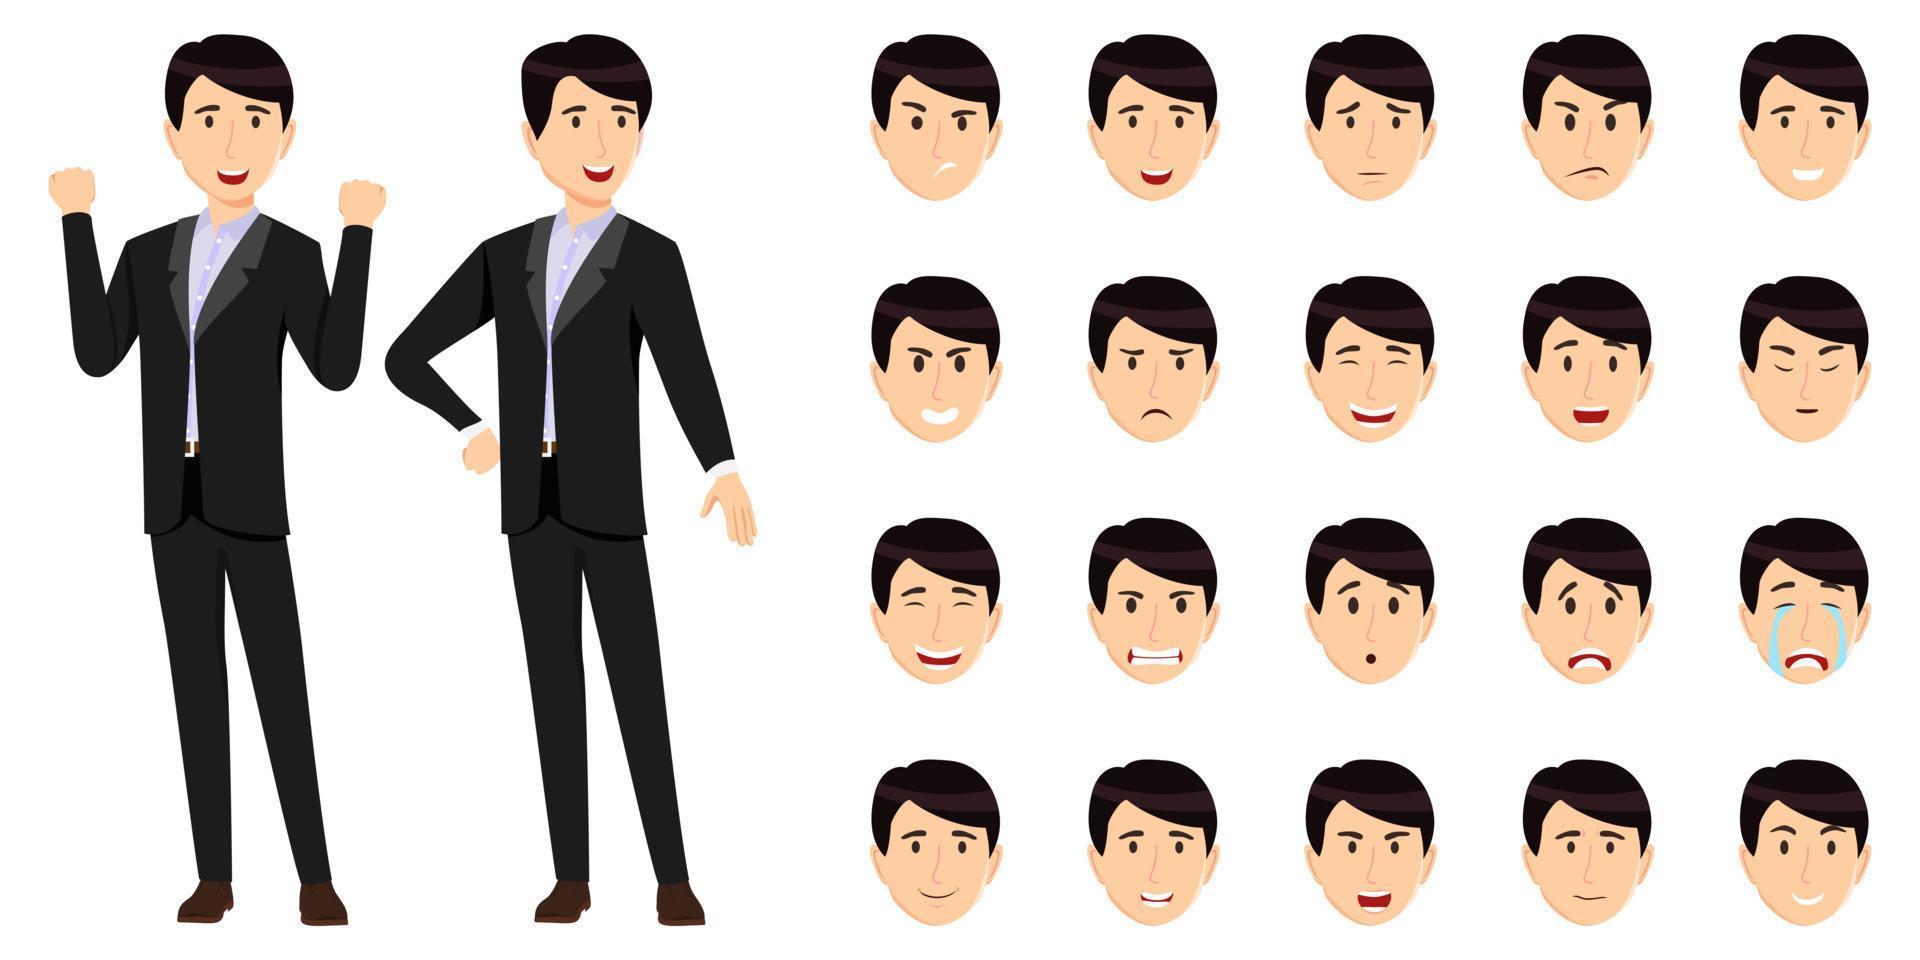 jeu de caractères d'homme d'affaires portant une tenue d'affaires avec différentes expressions faciales et émotion triste en colère heureux joyeux jeu d'icônes isolé posant vecteur